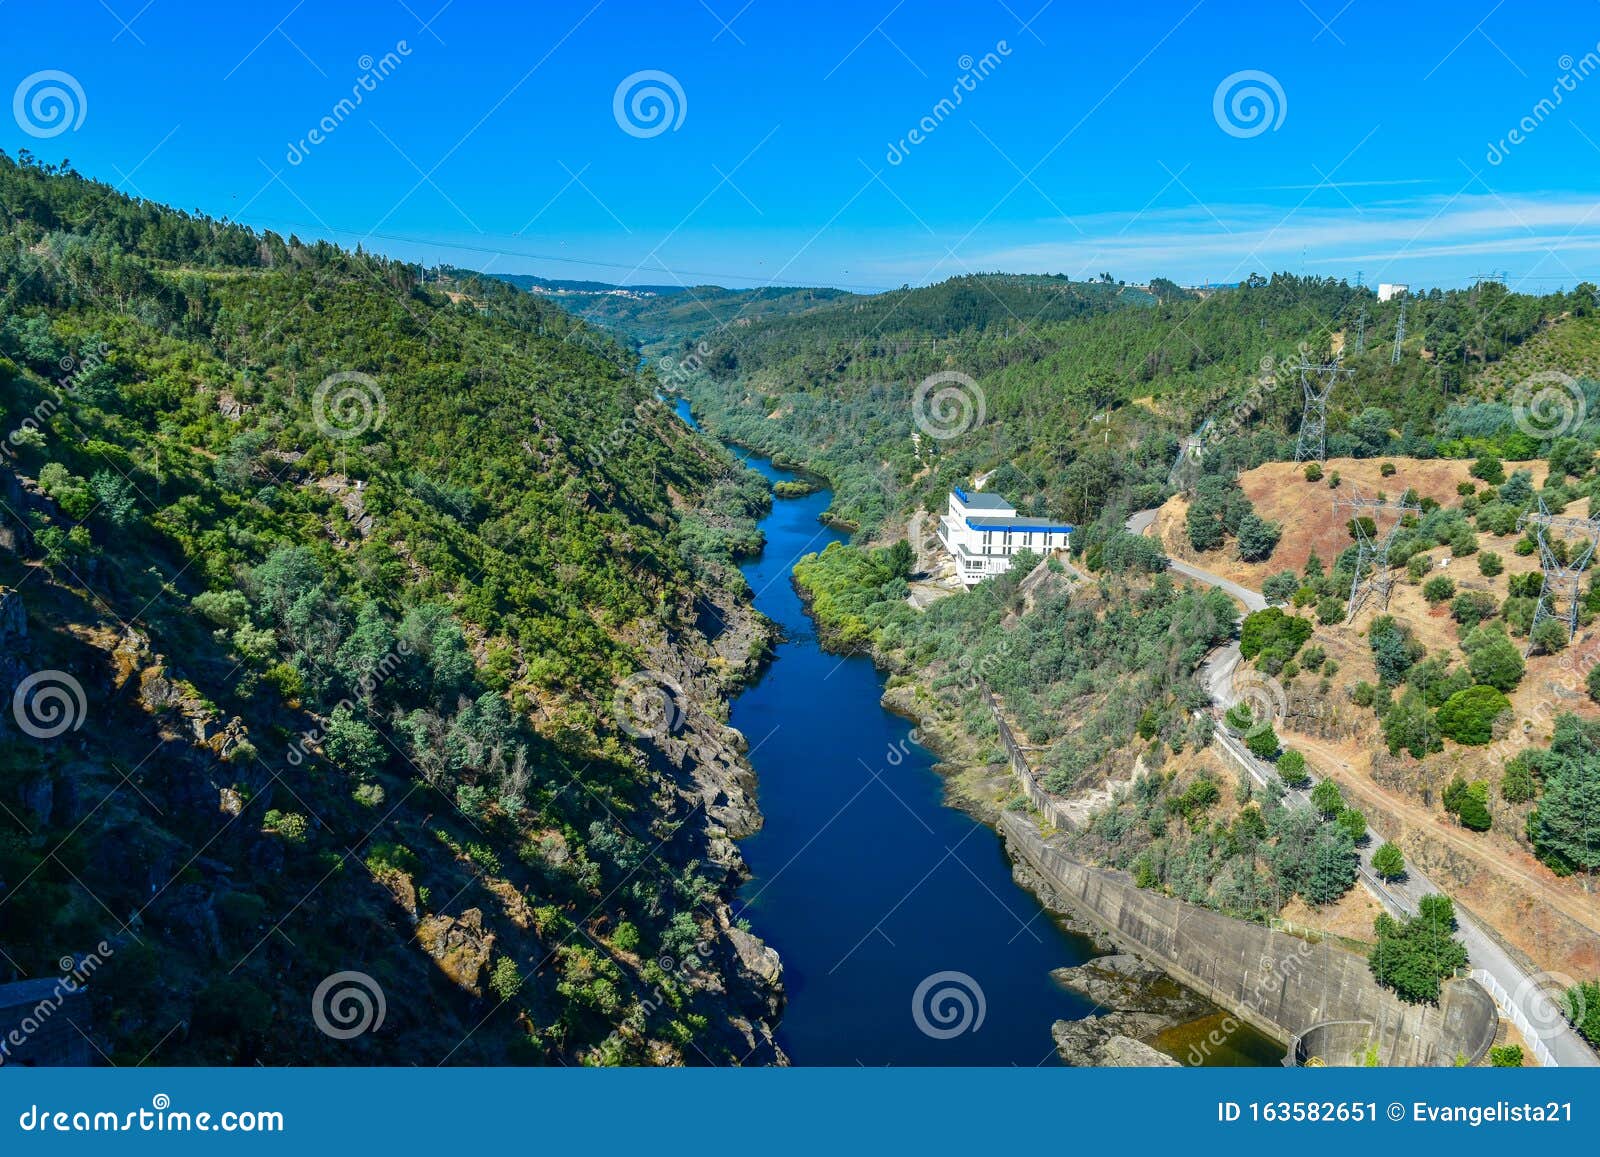 zezere river below castelo de bode dam in tomar, portugal